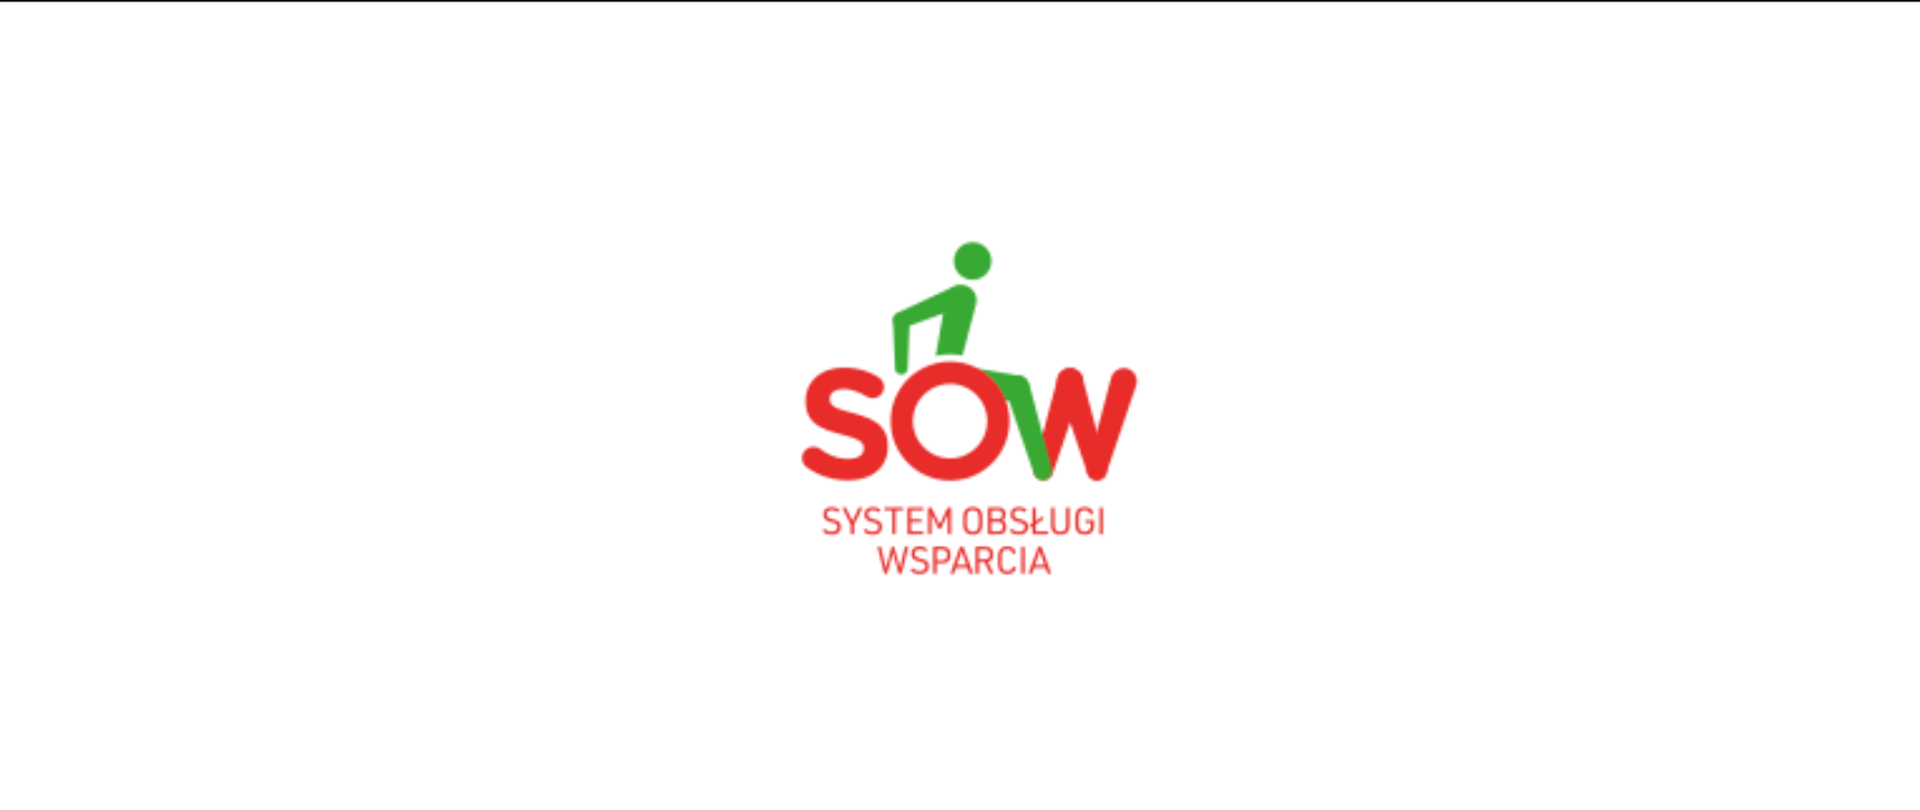 Czerwone logo SOW z zieloną postacią poruszającą się na wózku inwalidzkim